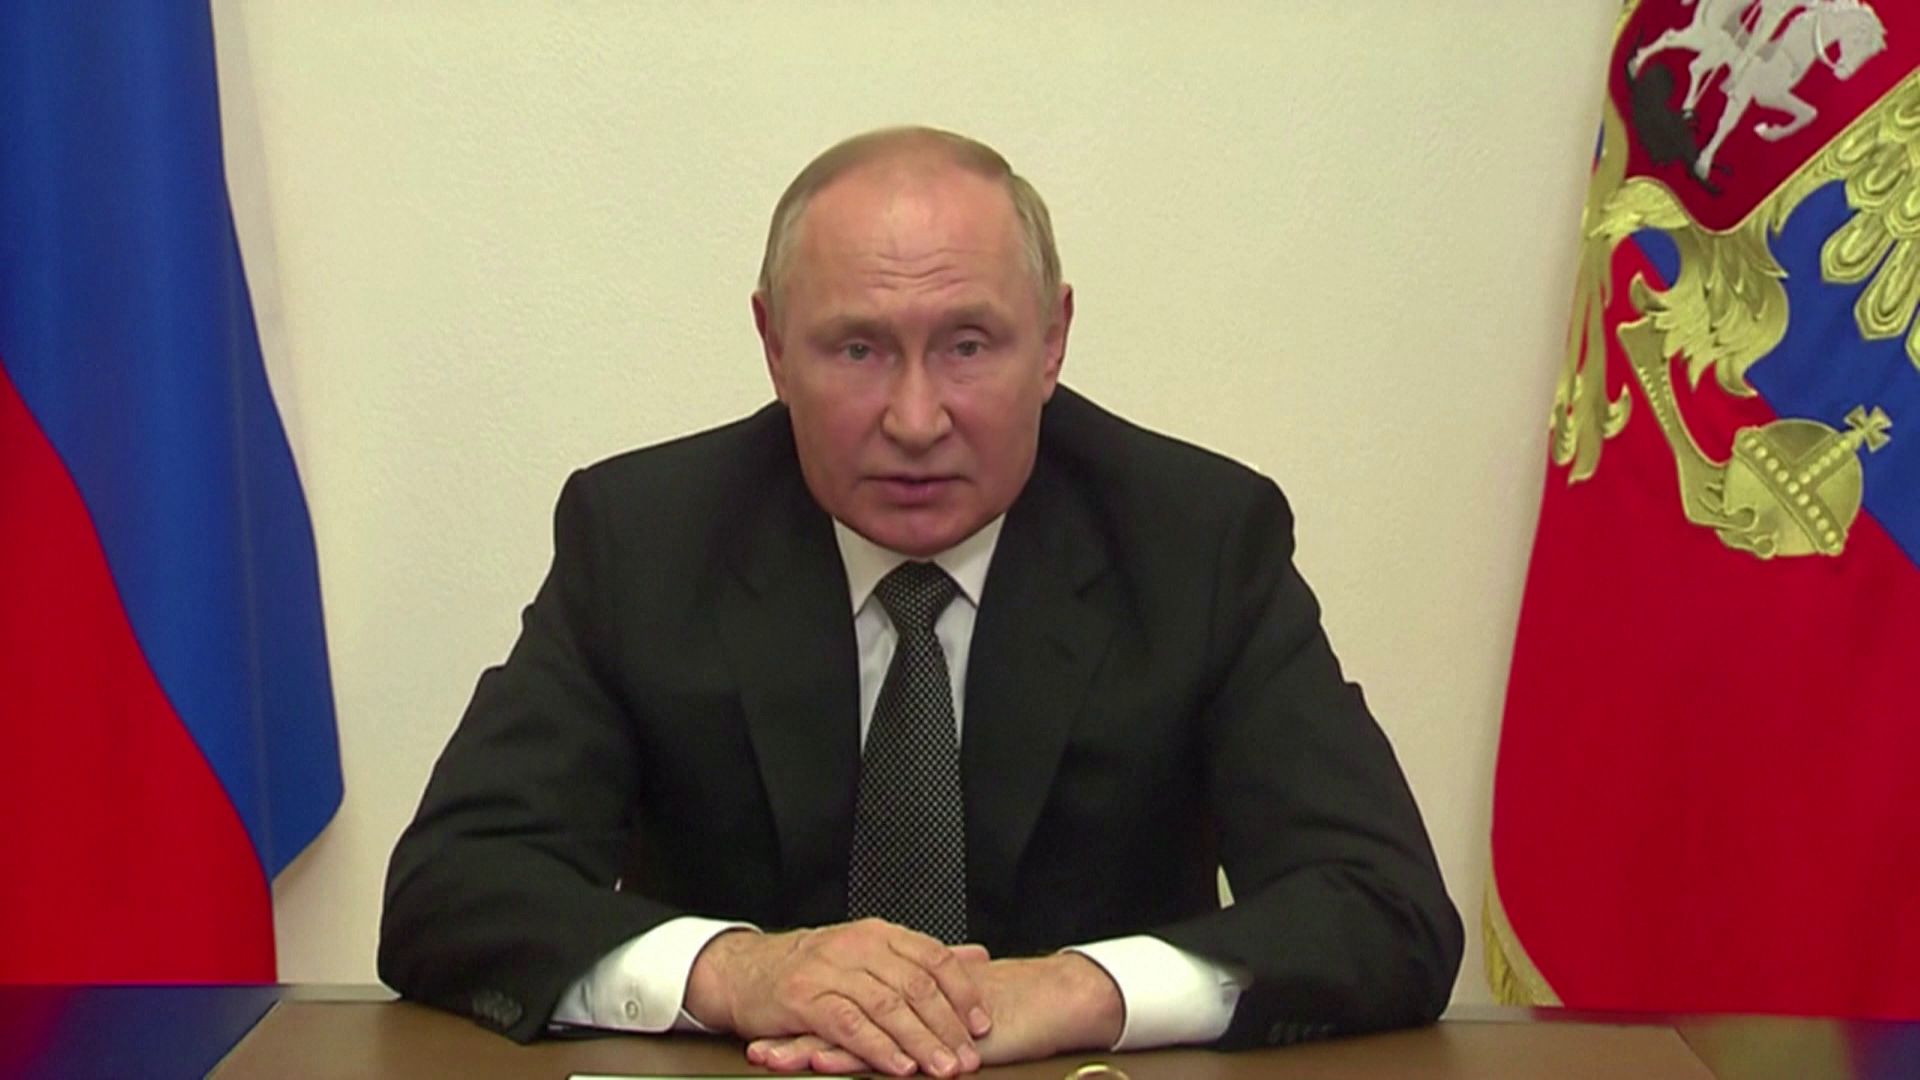 Oroszország ideológiája: mi az alapja Putyin szemléletének?